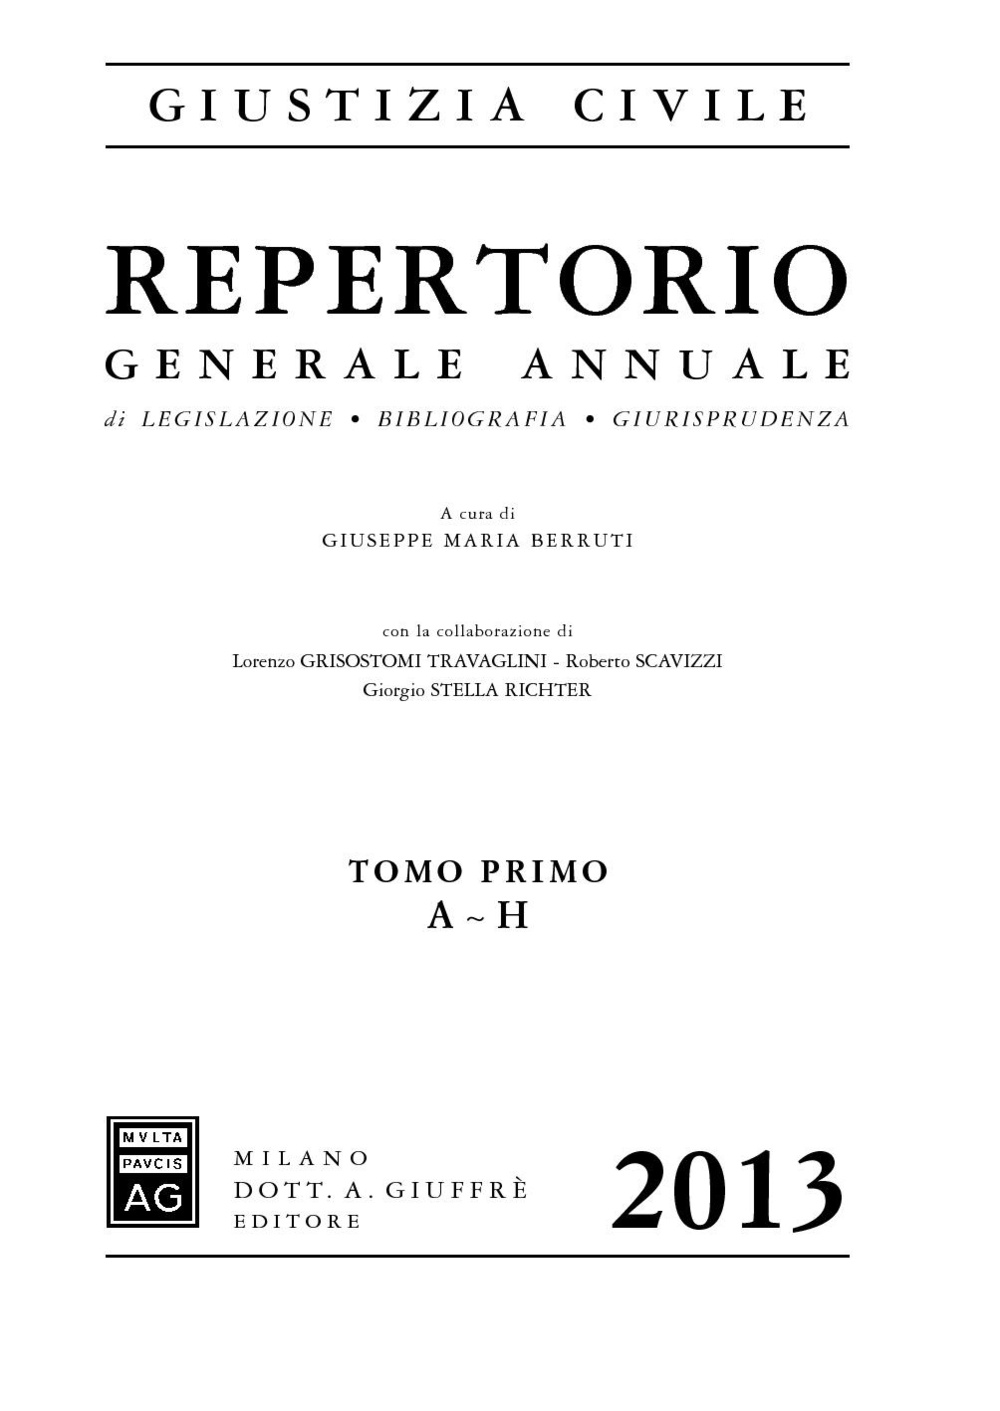 Repertorio generale annuale di legislazione, bibliografia, giurisprudenza 2013